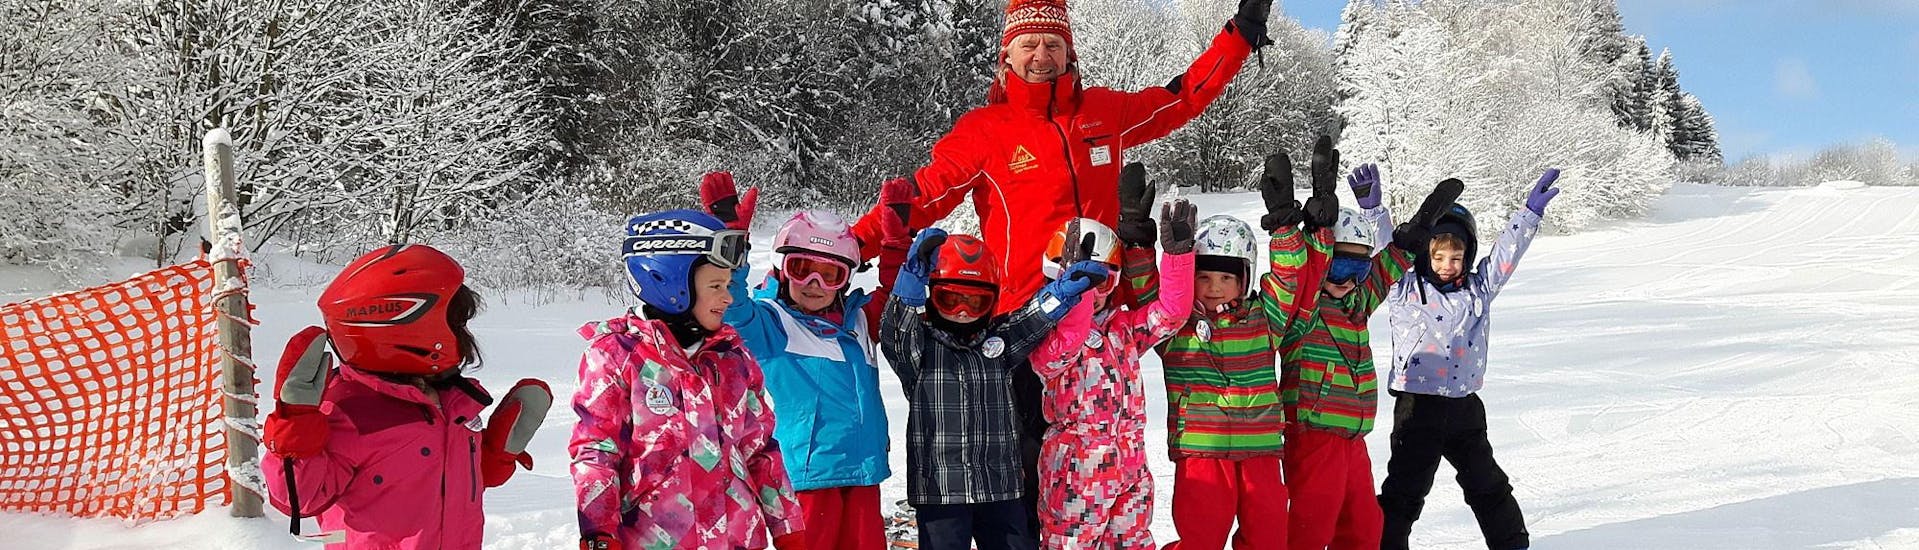 Skilehrer und Kinder mit erhobenen Händen bei der G&S Schneesportschule Mitterdorf.